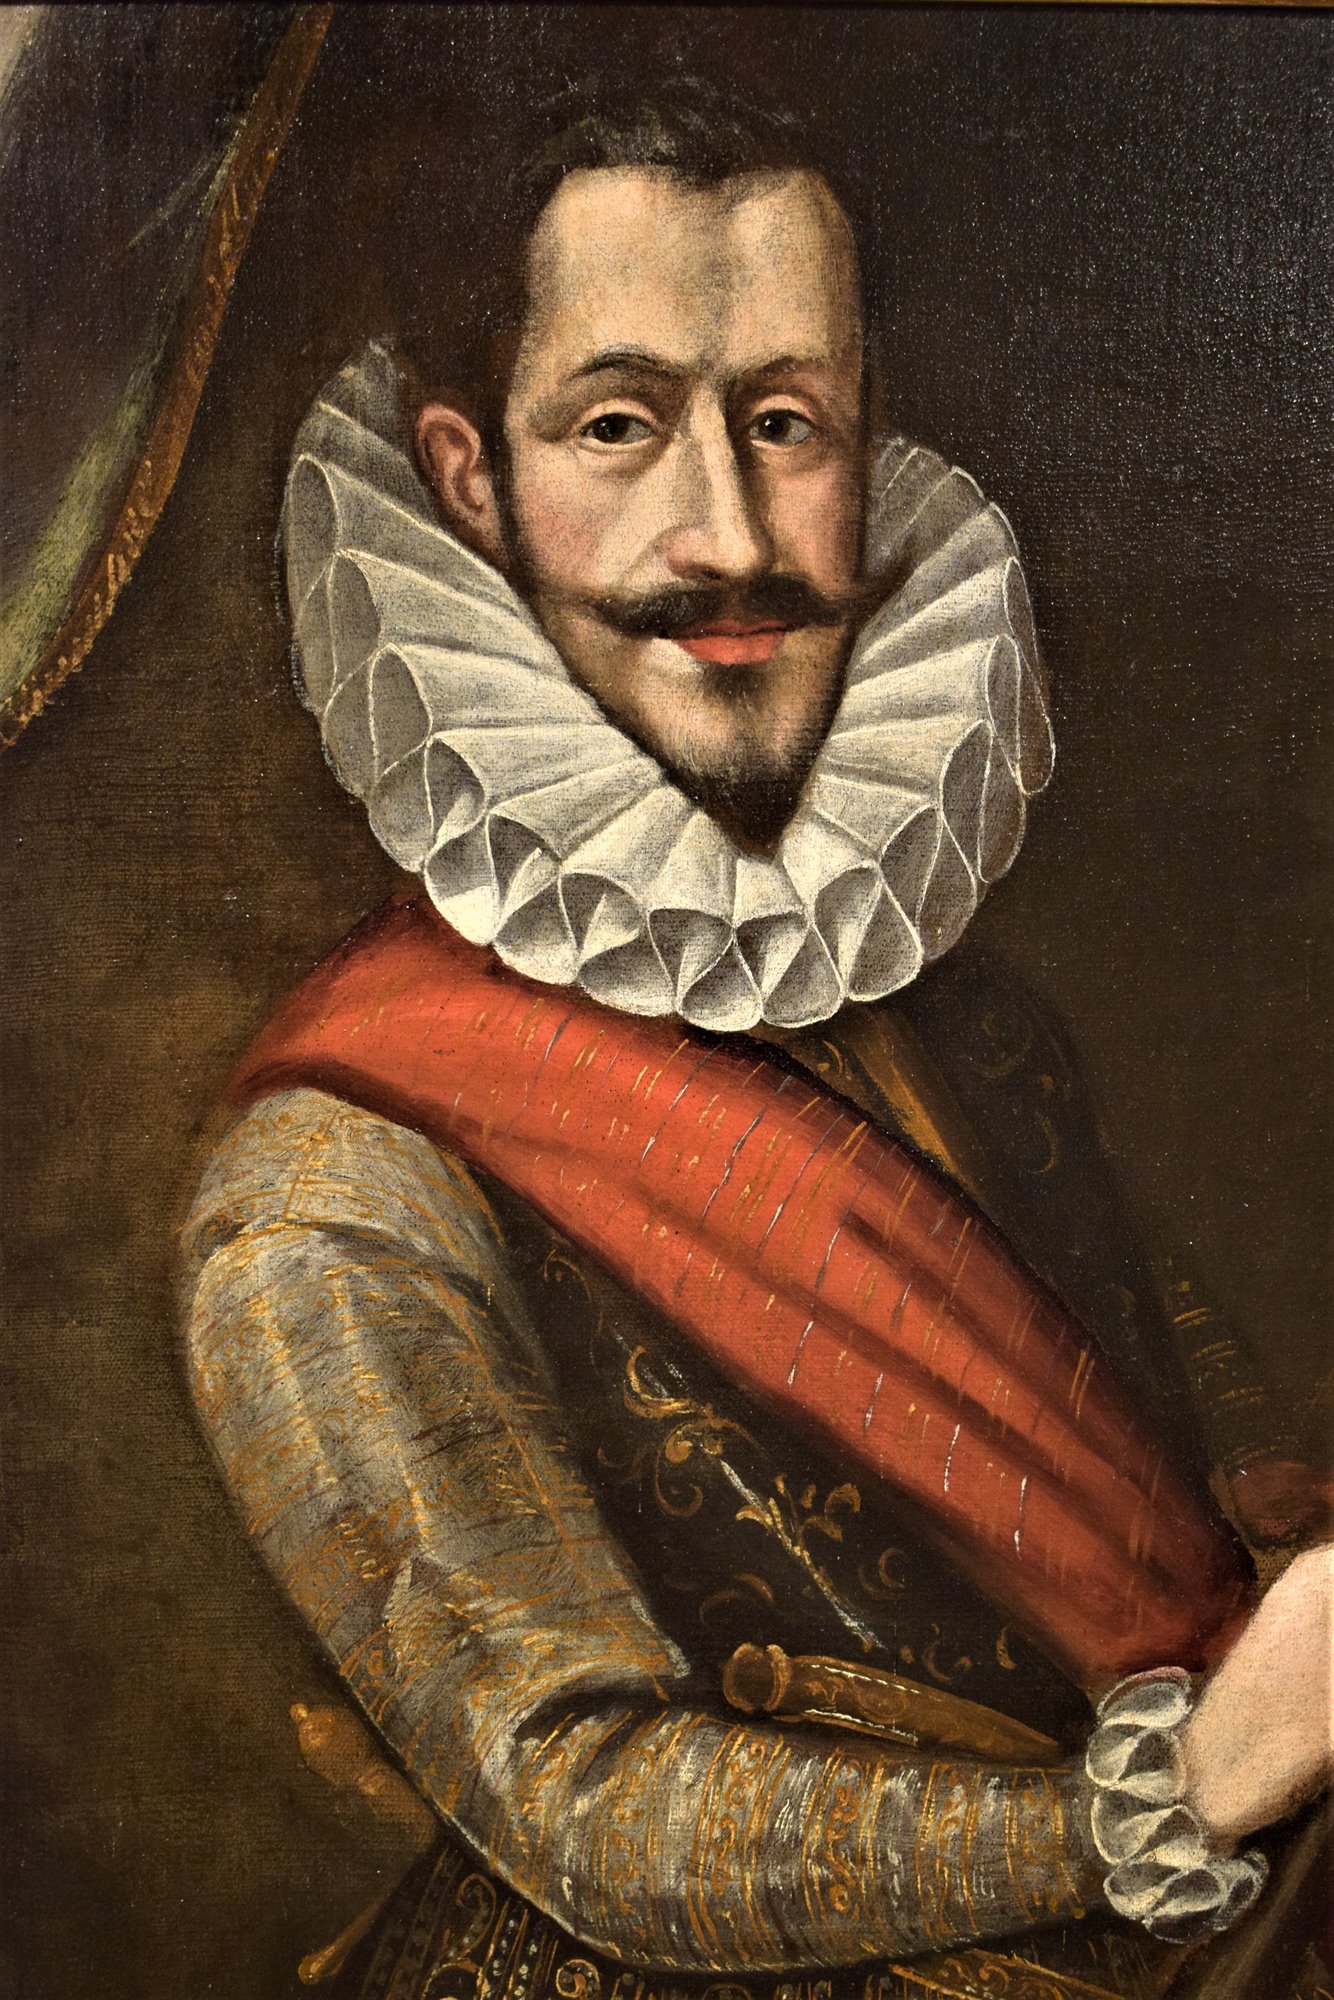 Portrait of a Renaissance character